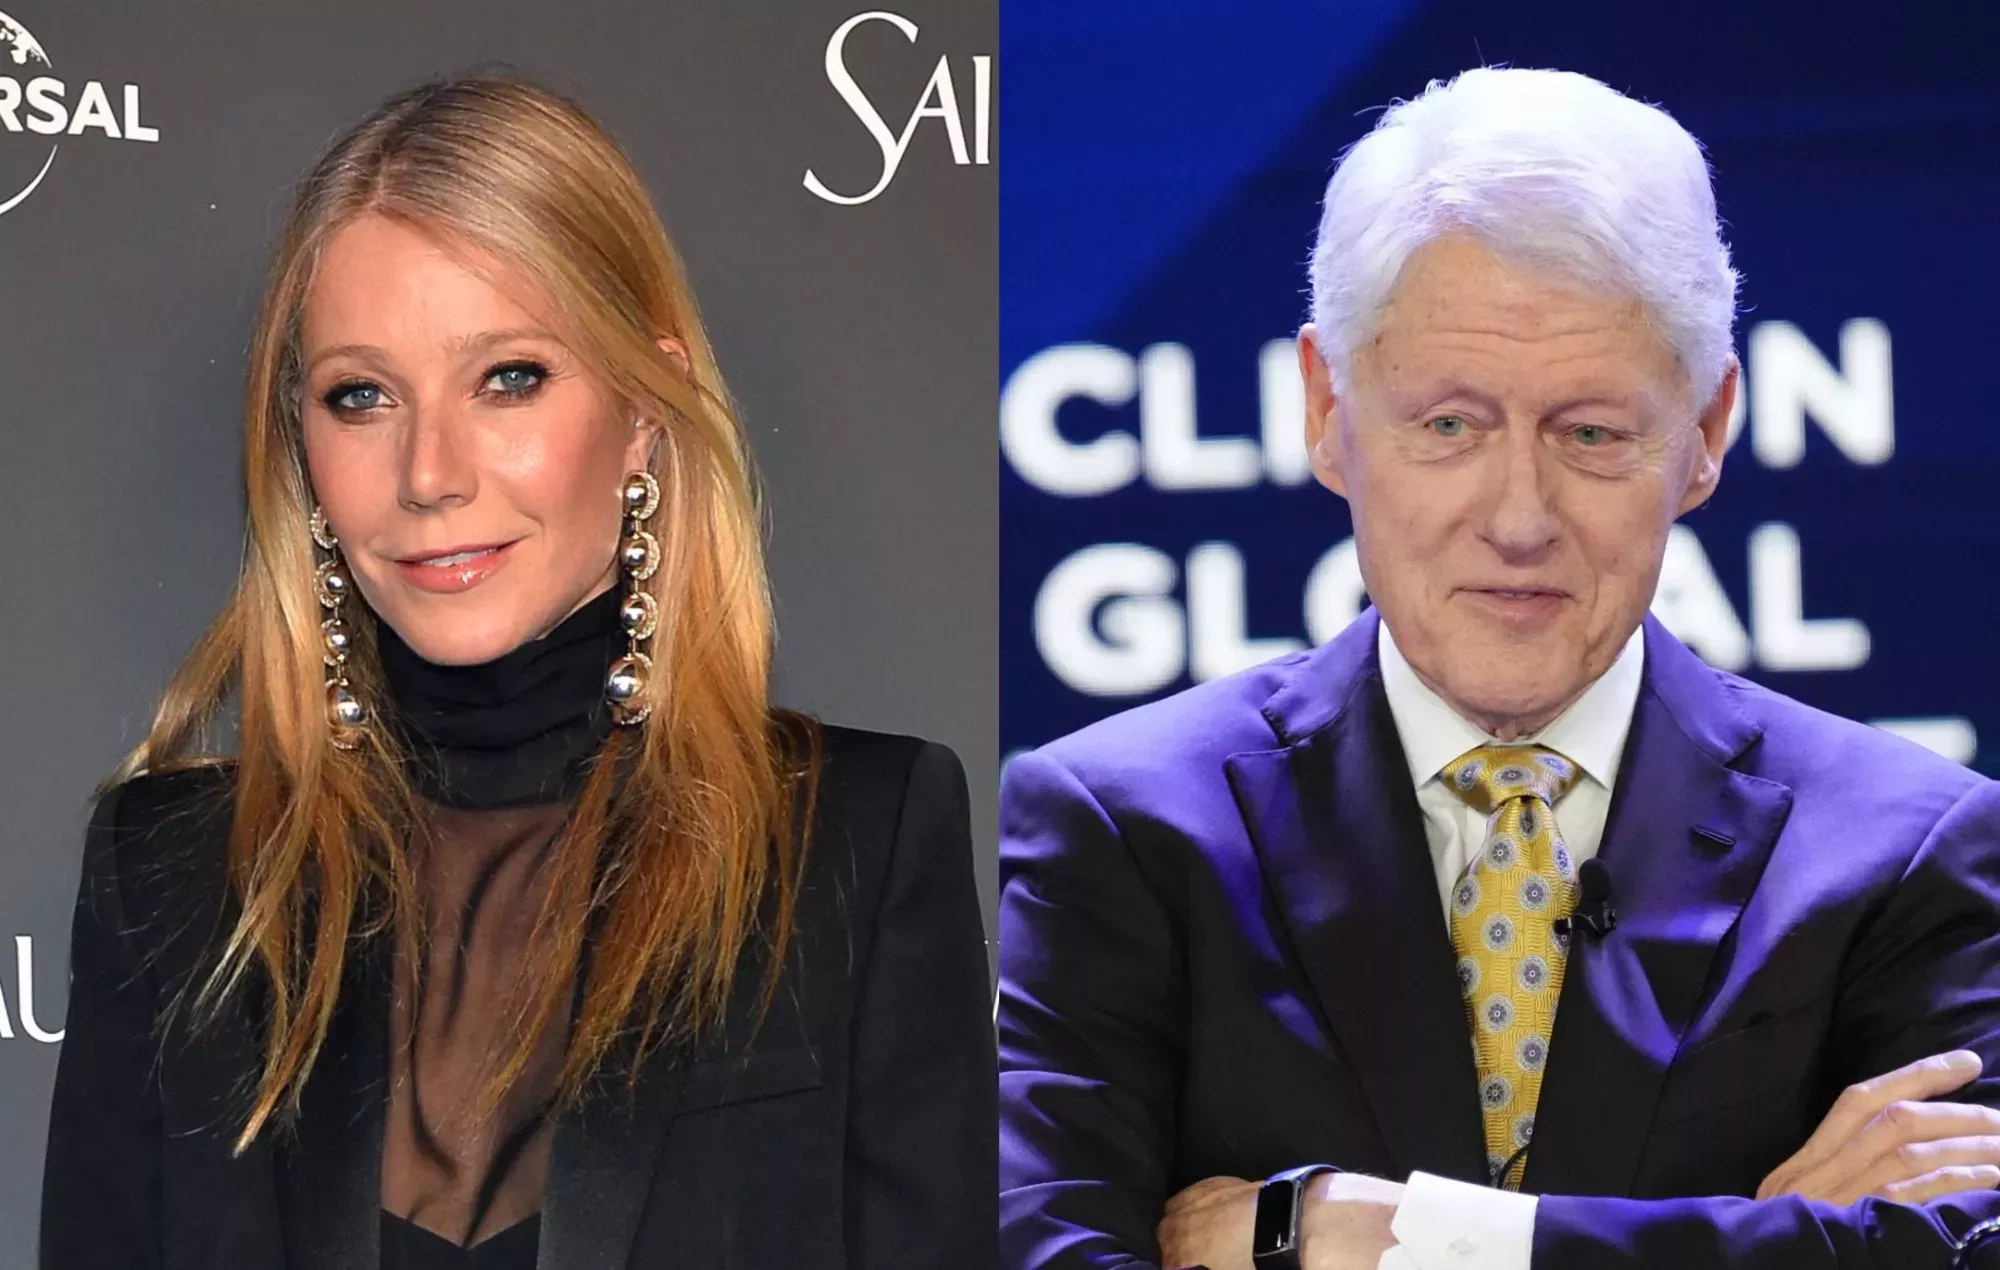 Gwyneth Paltrow confirma que Bill Clinton se quedó dormido y 